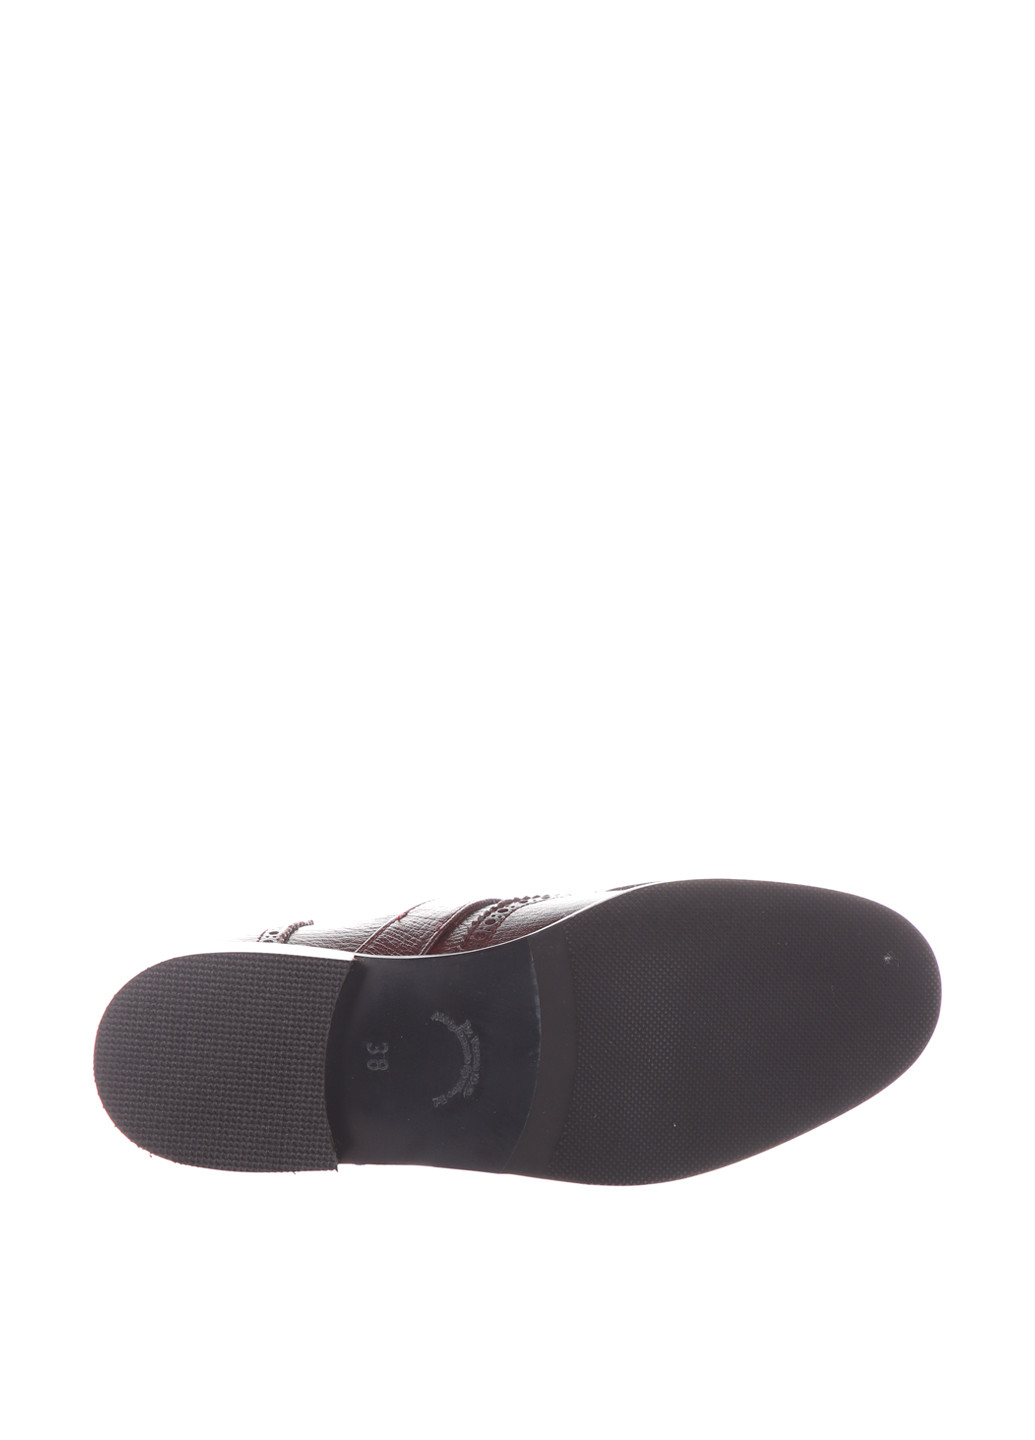 Туфли Versace 19.69 на низком каблуке с заклепками, с перфорацией